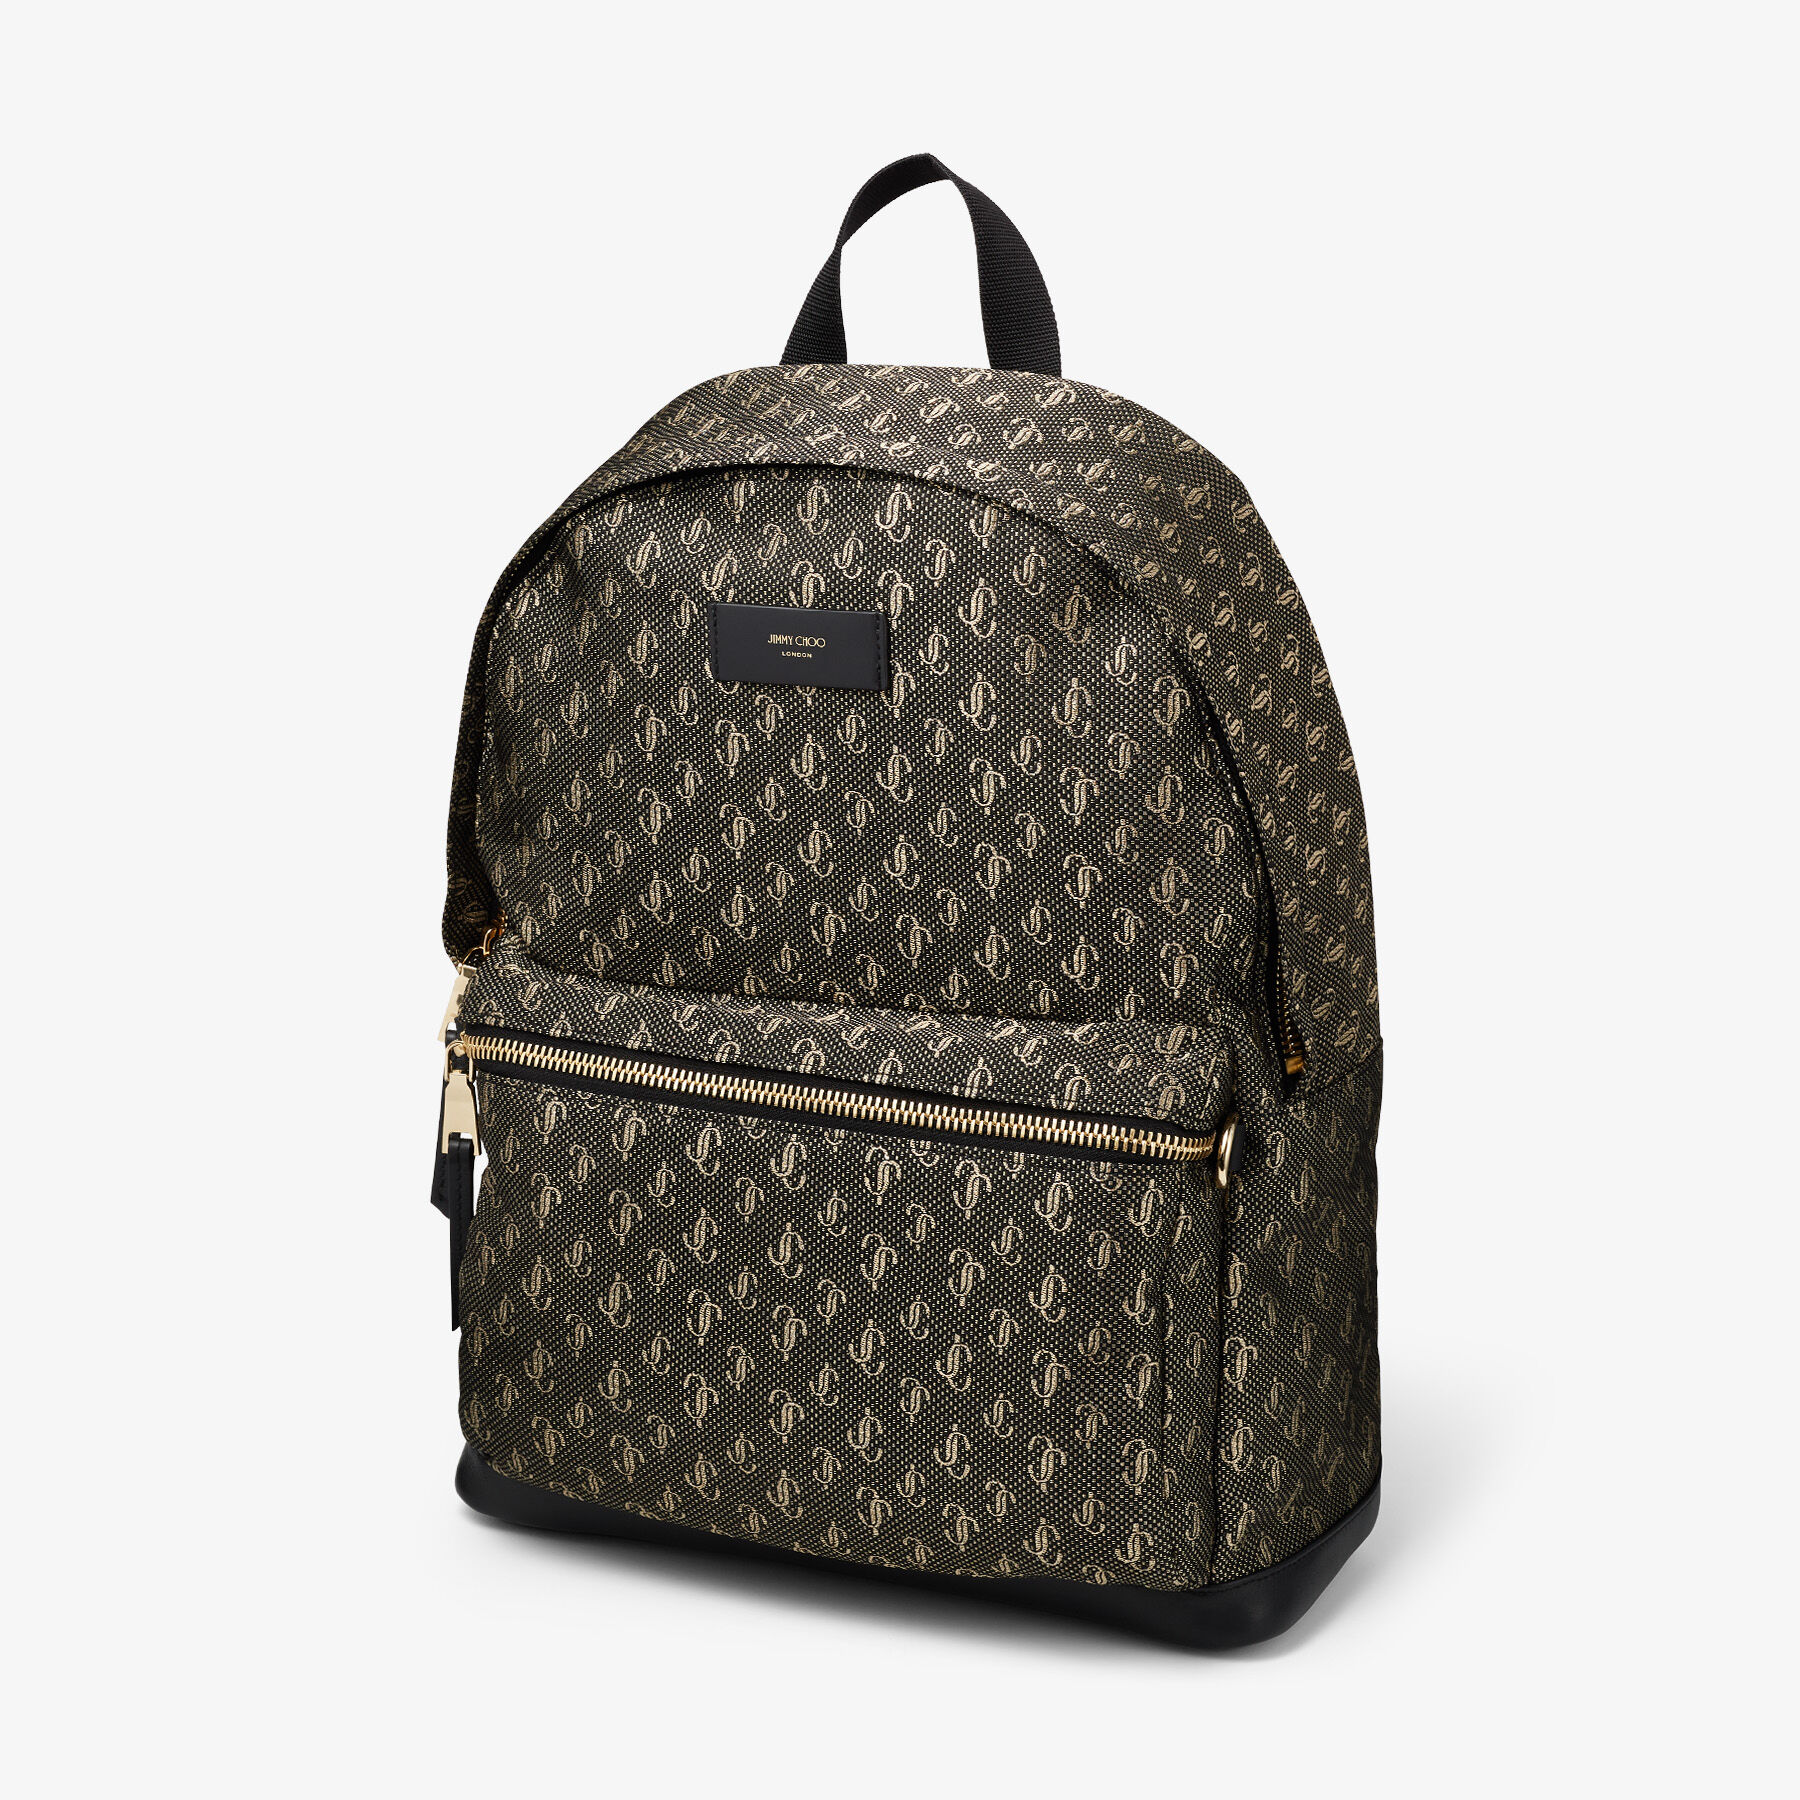 Luxury backpack - Wilmer Jimmy Choo black backpack with embossed